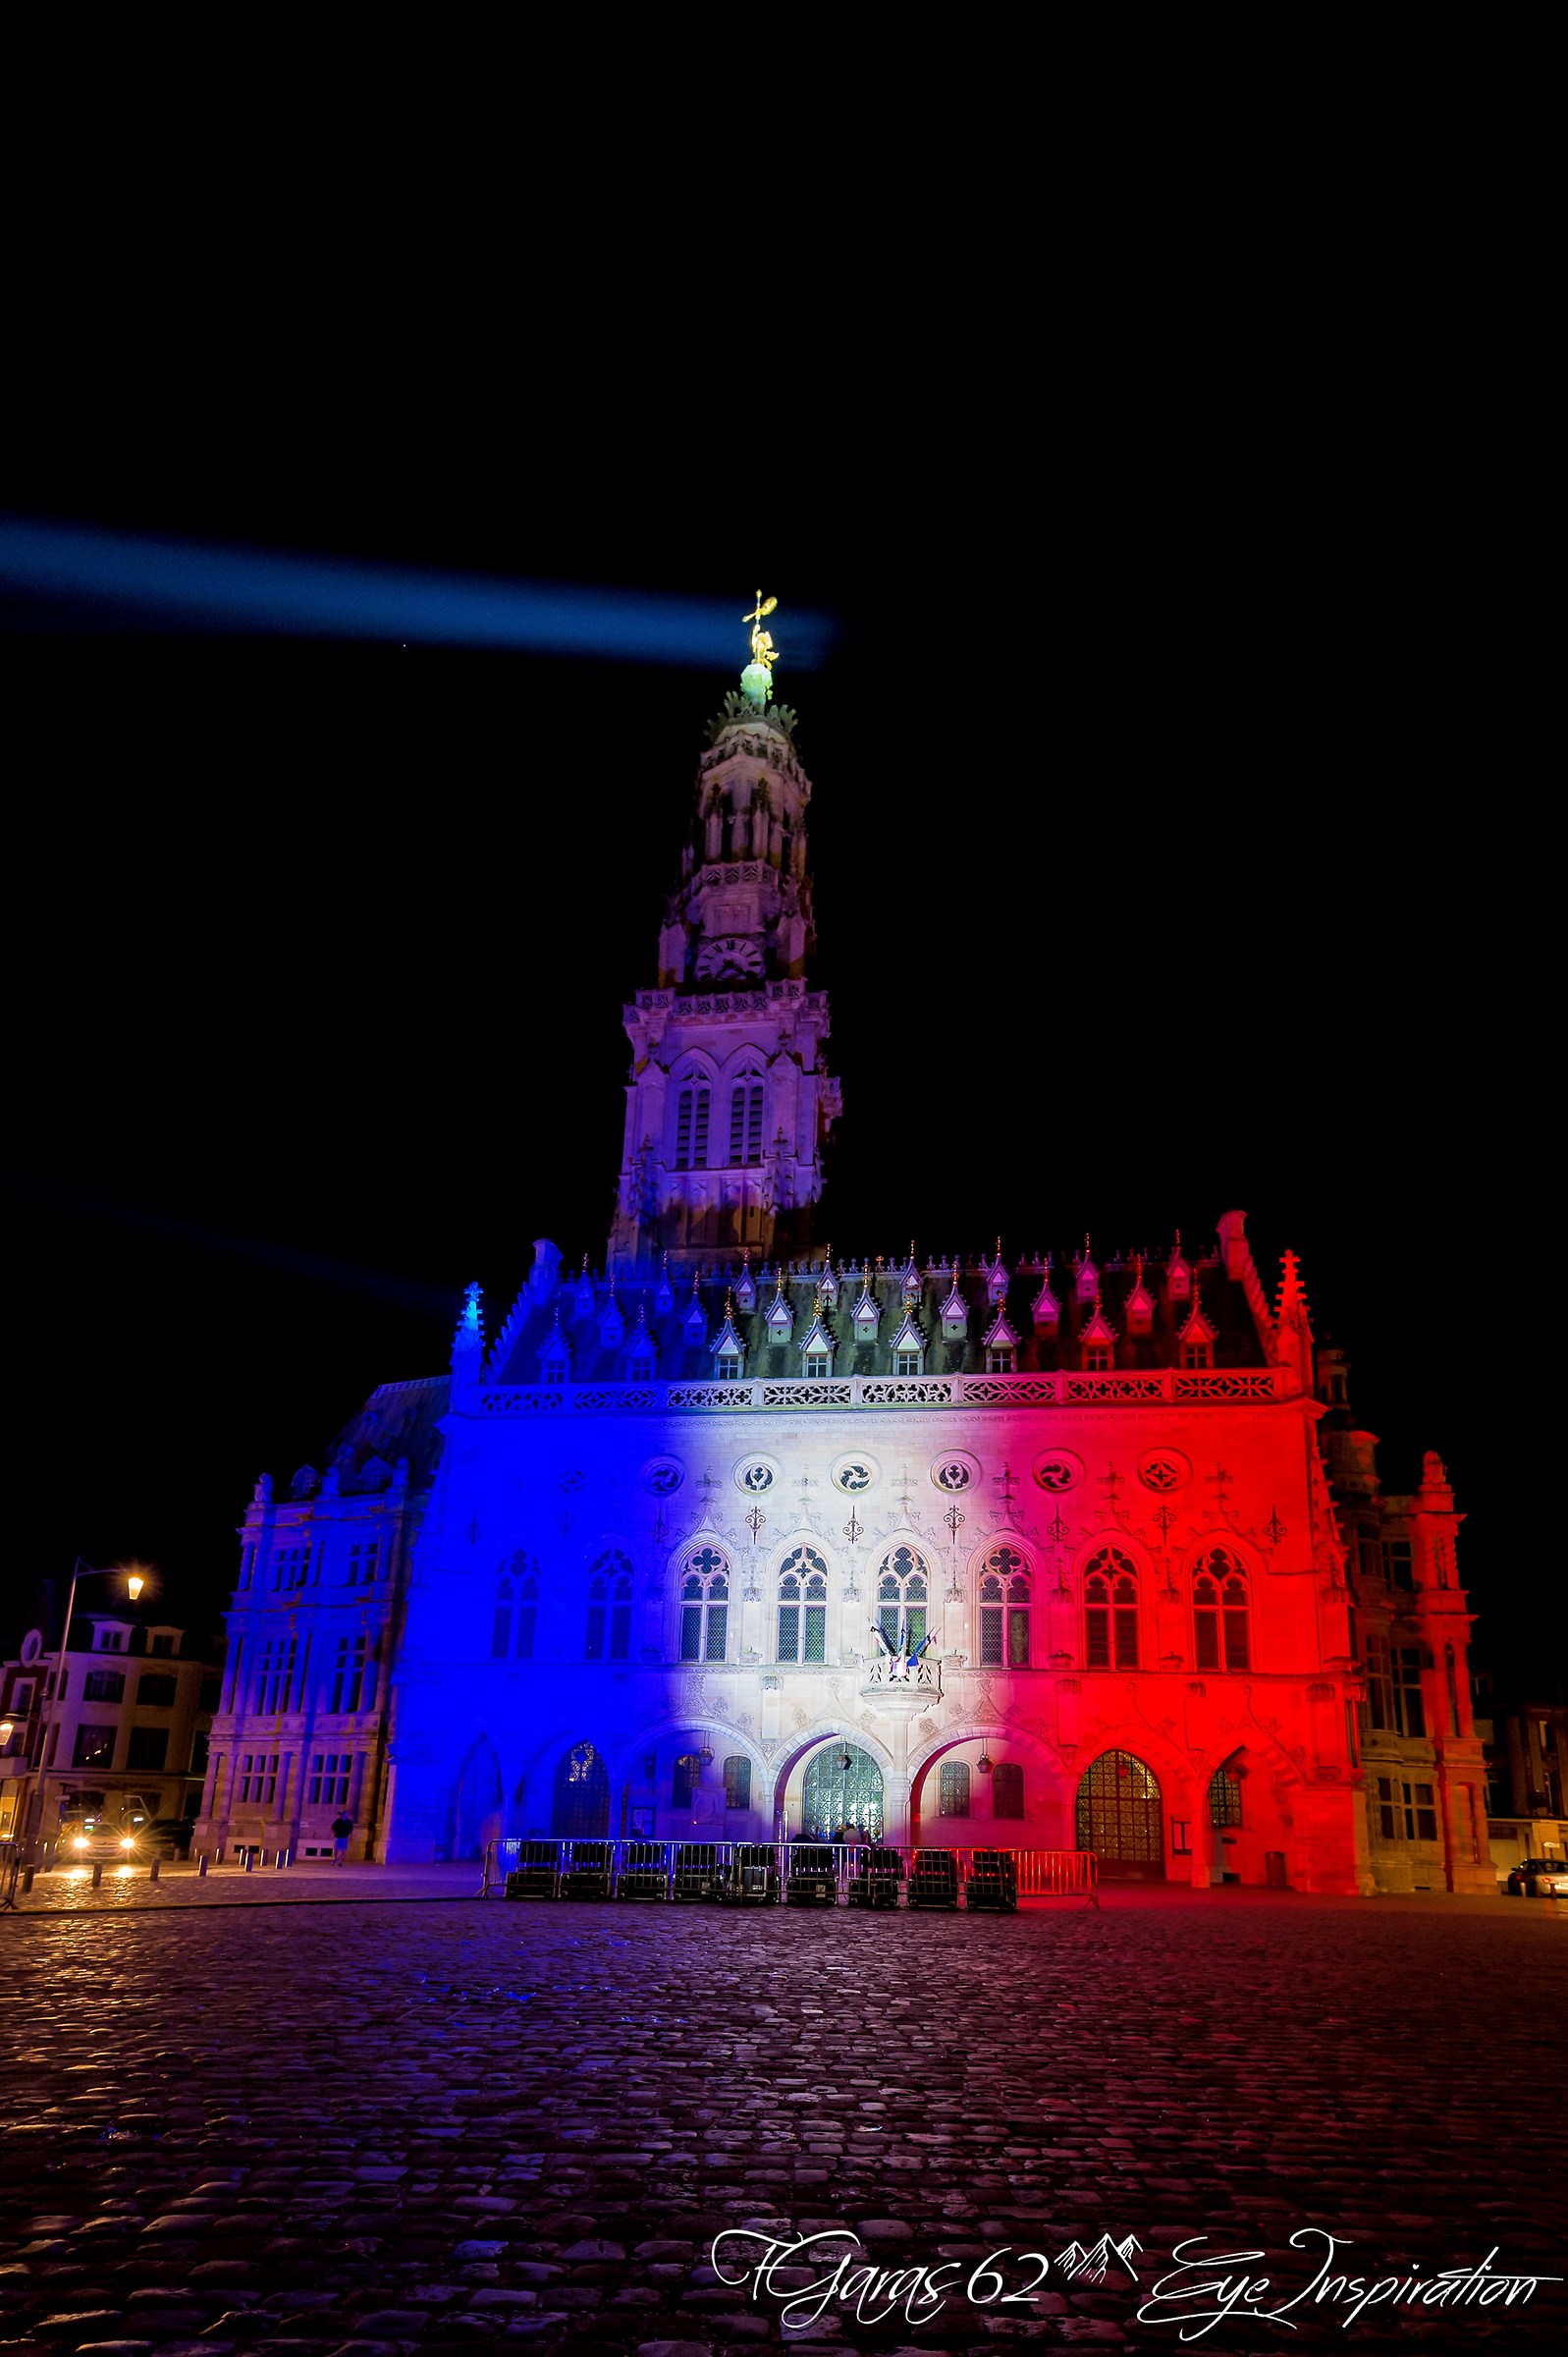 Arras rend hommage aux victimes des attentats de paris...